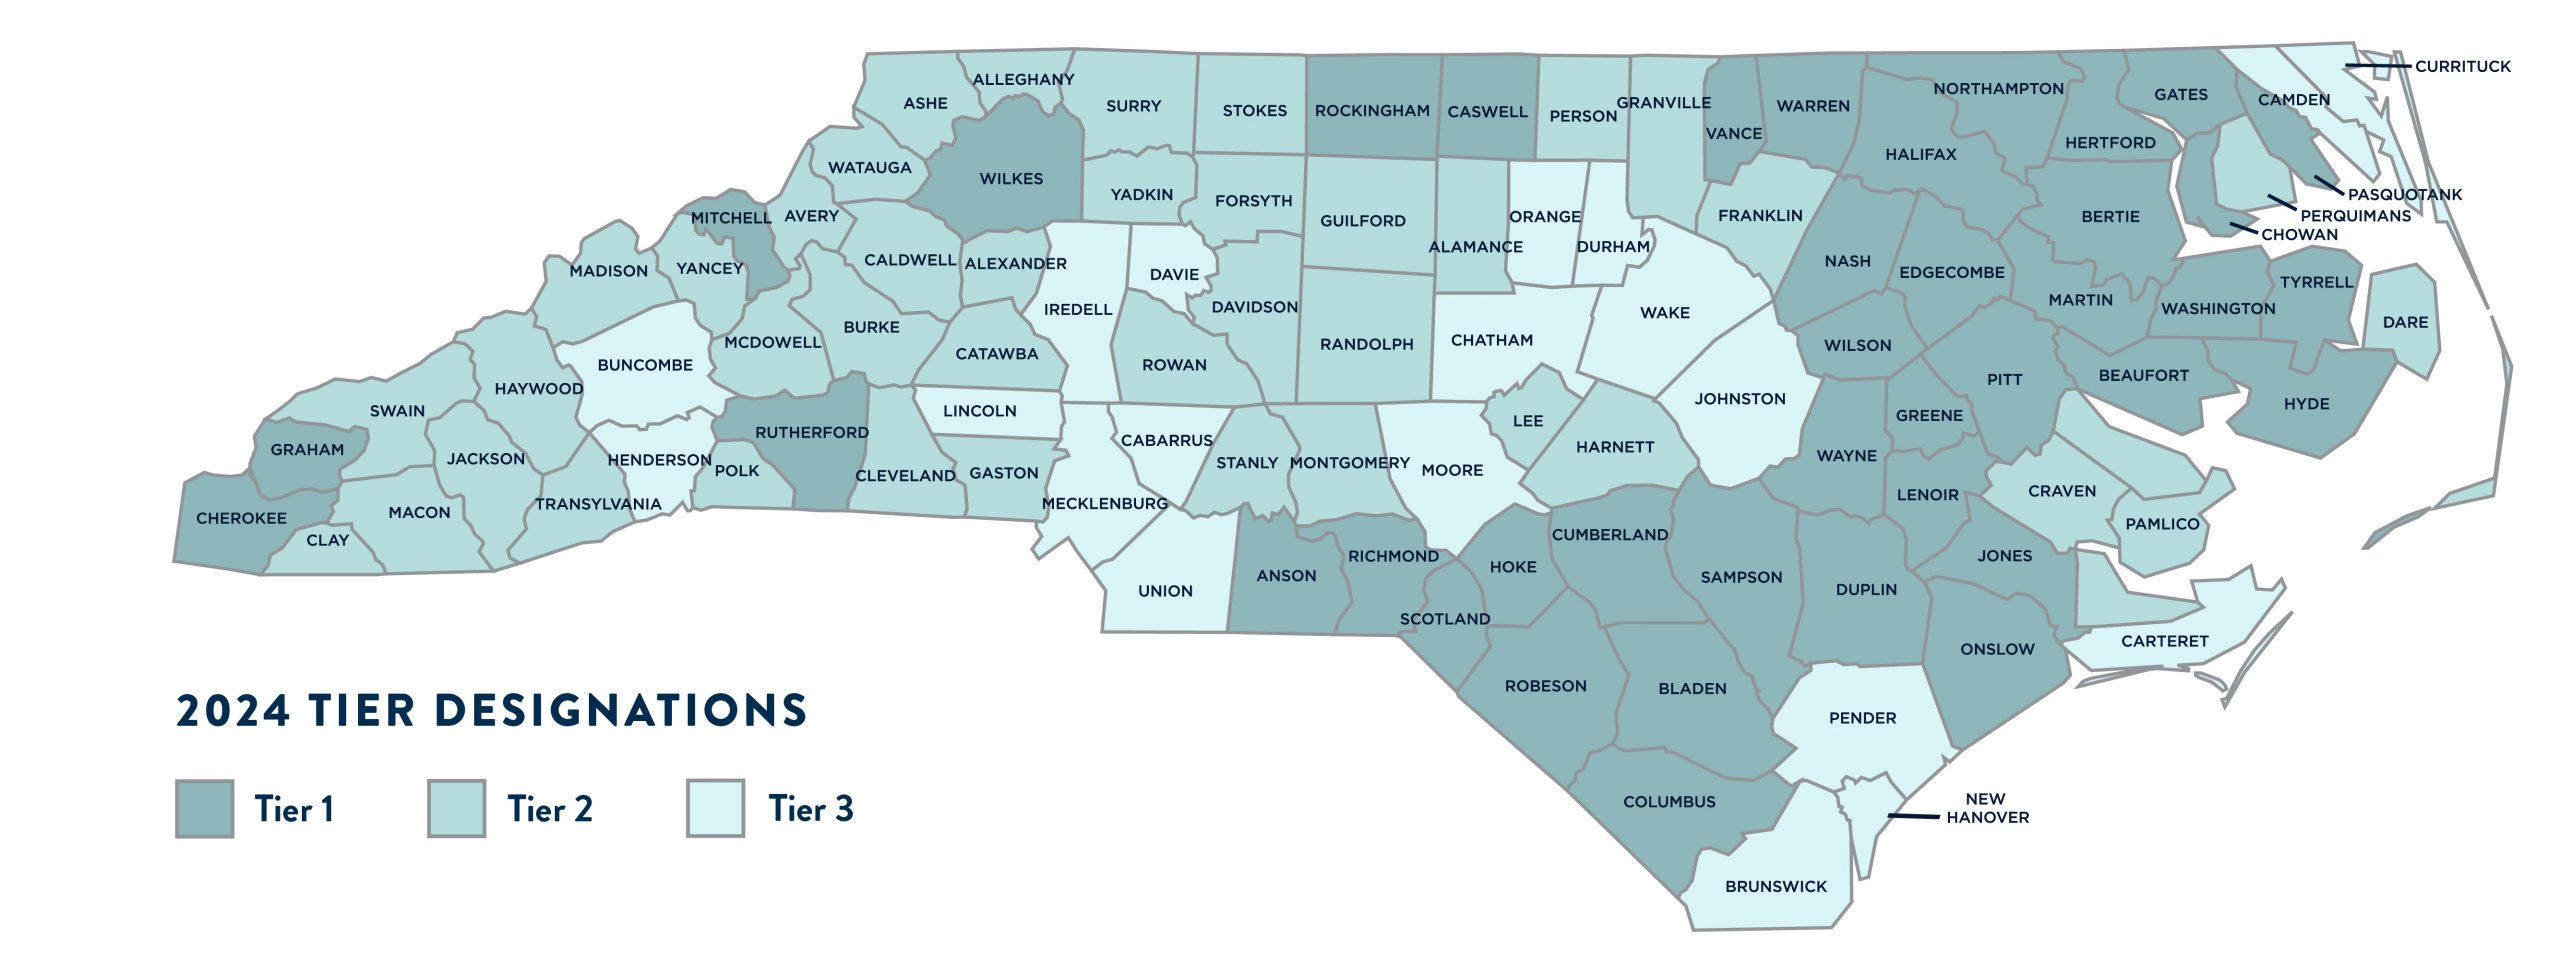 2024 county designation tier map